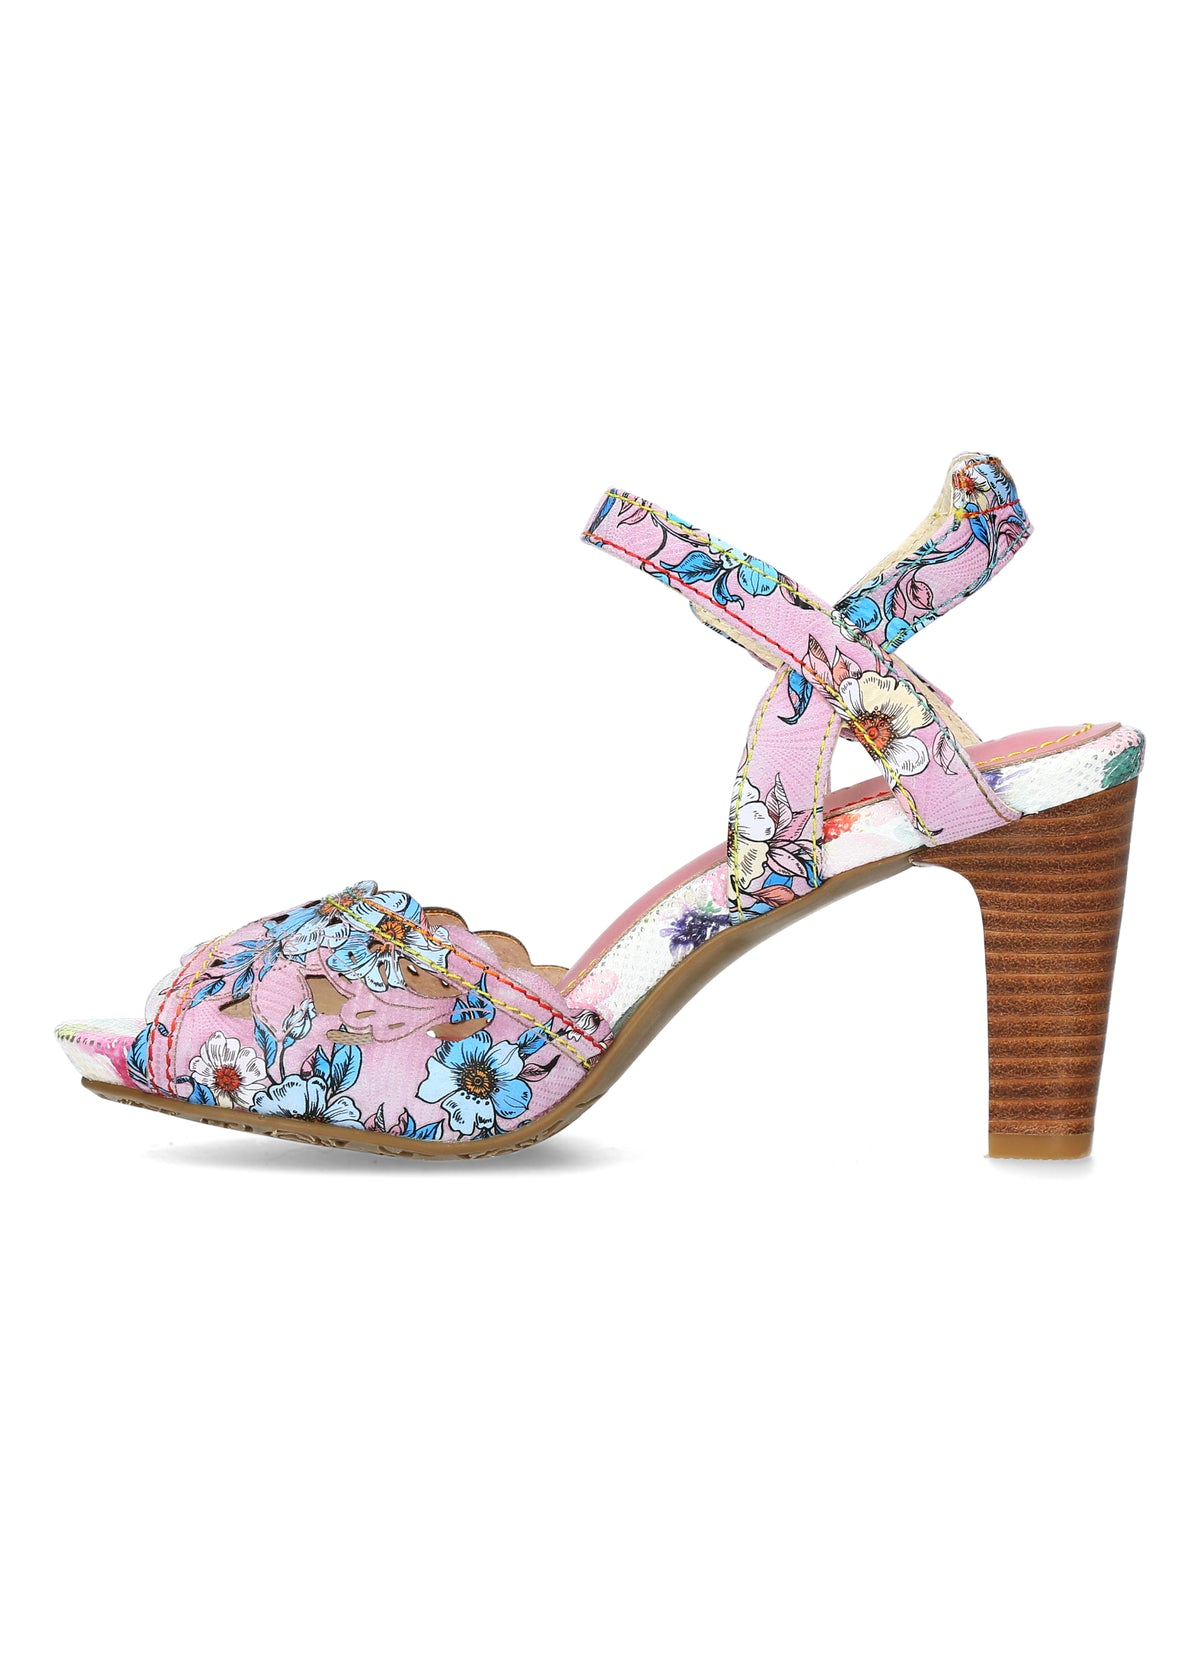 Klackade sandaler - Albane 51, rosa-lila blommor